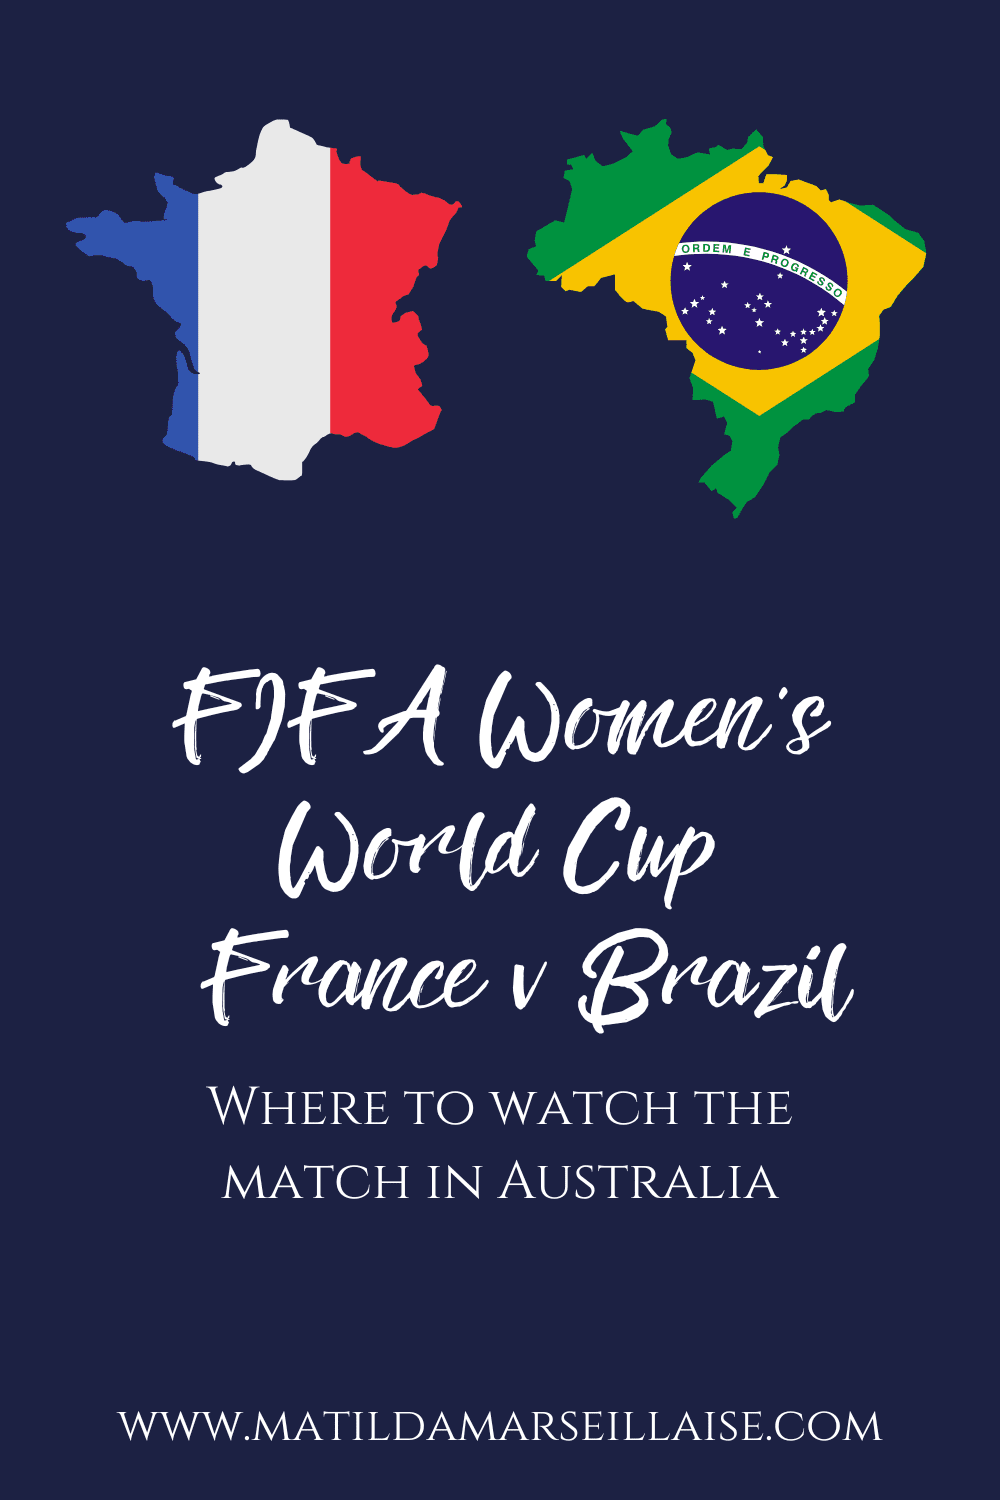 France v Brazil in Australia